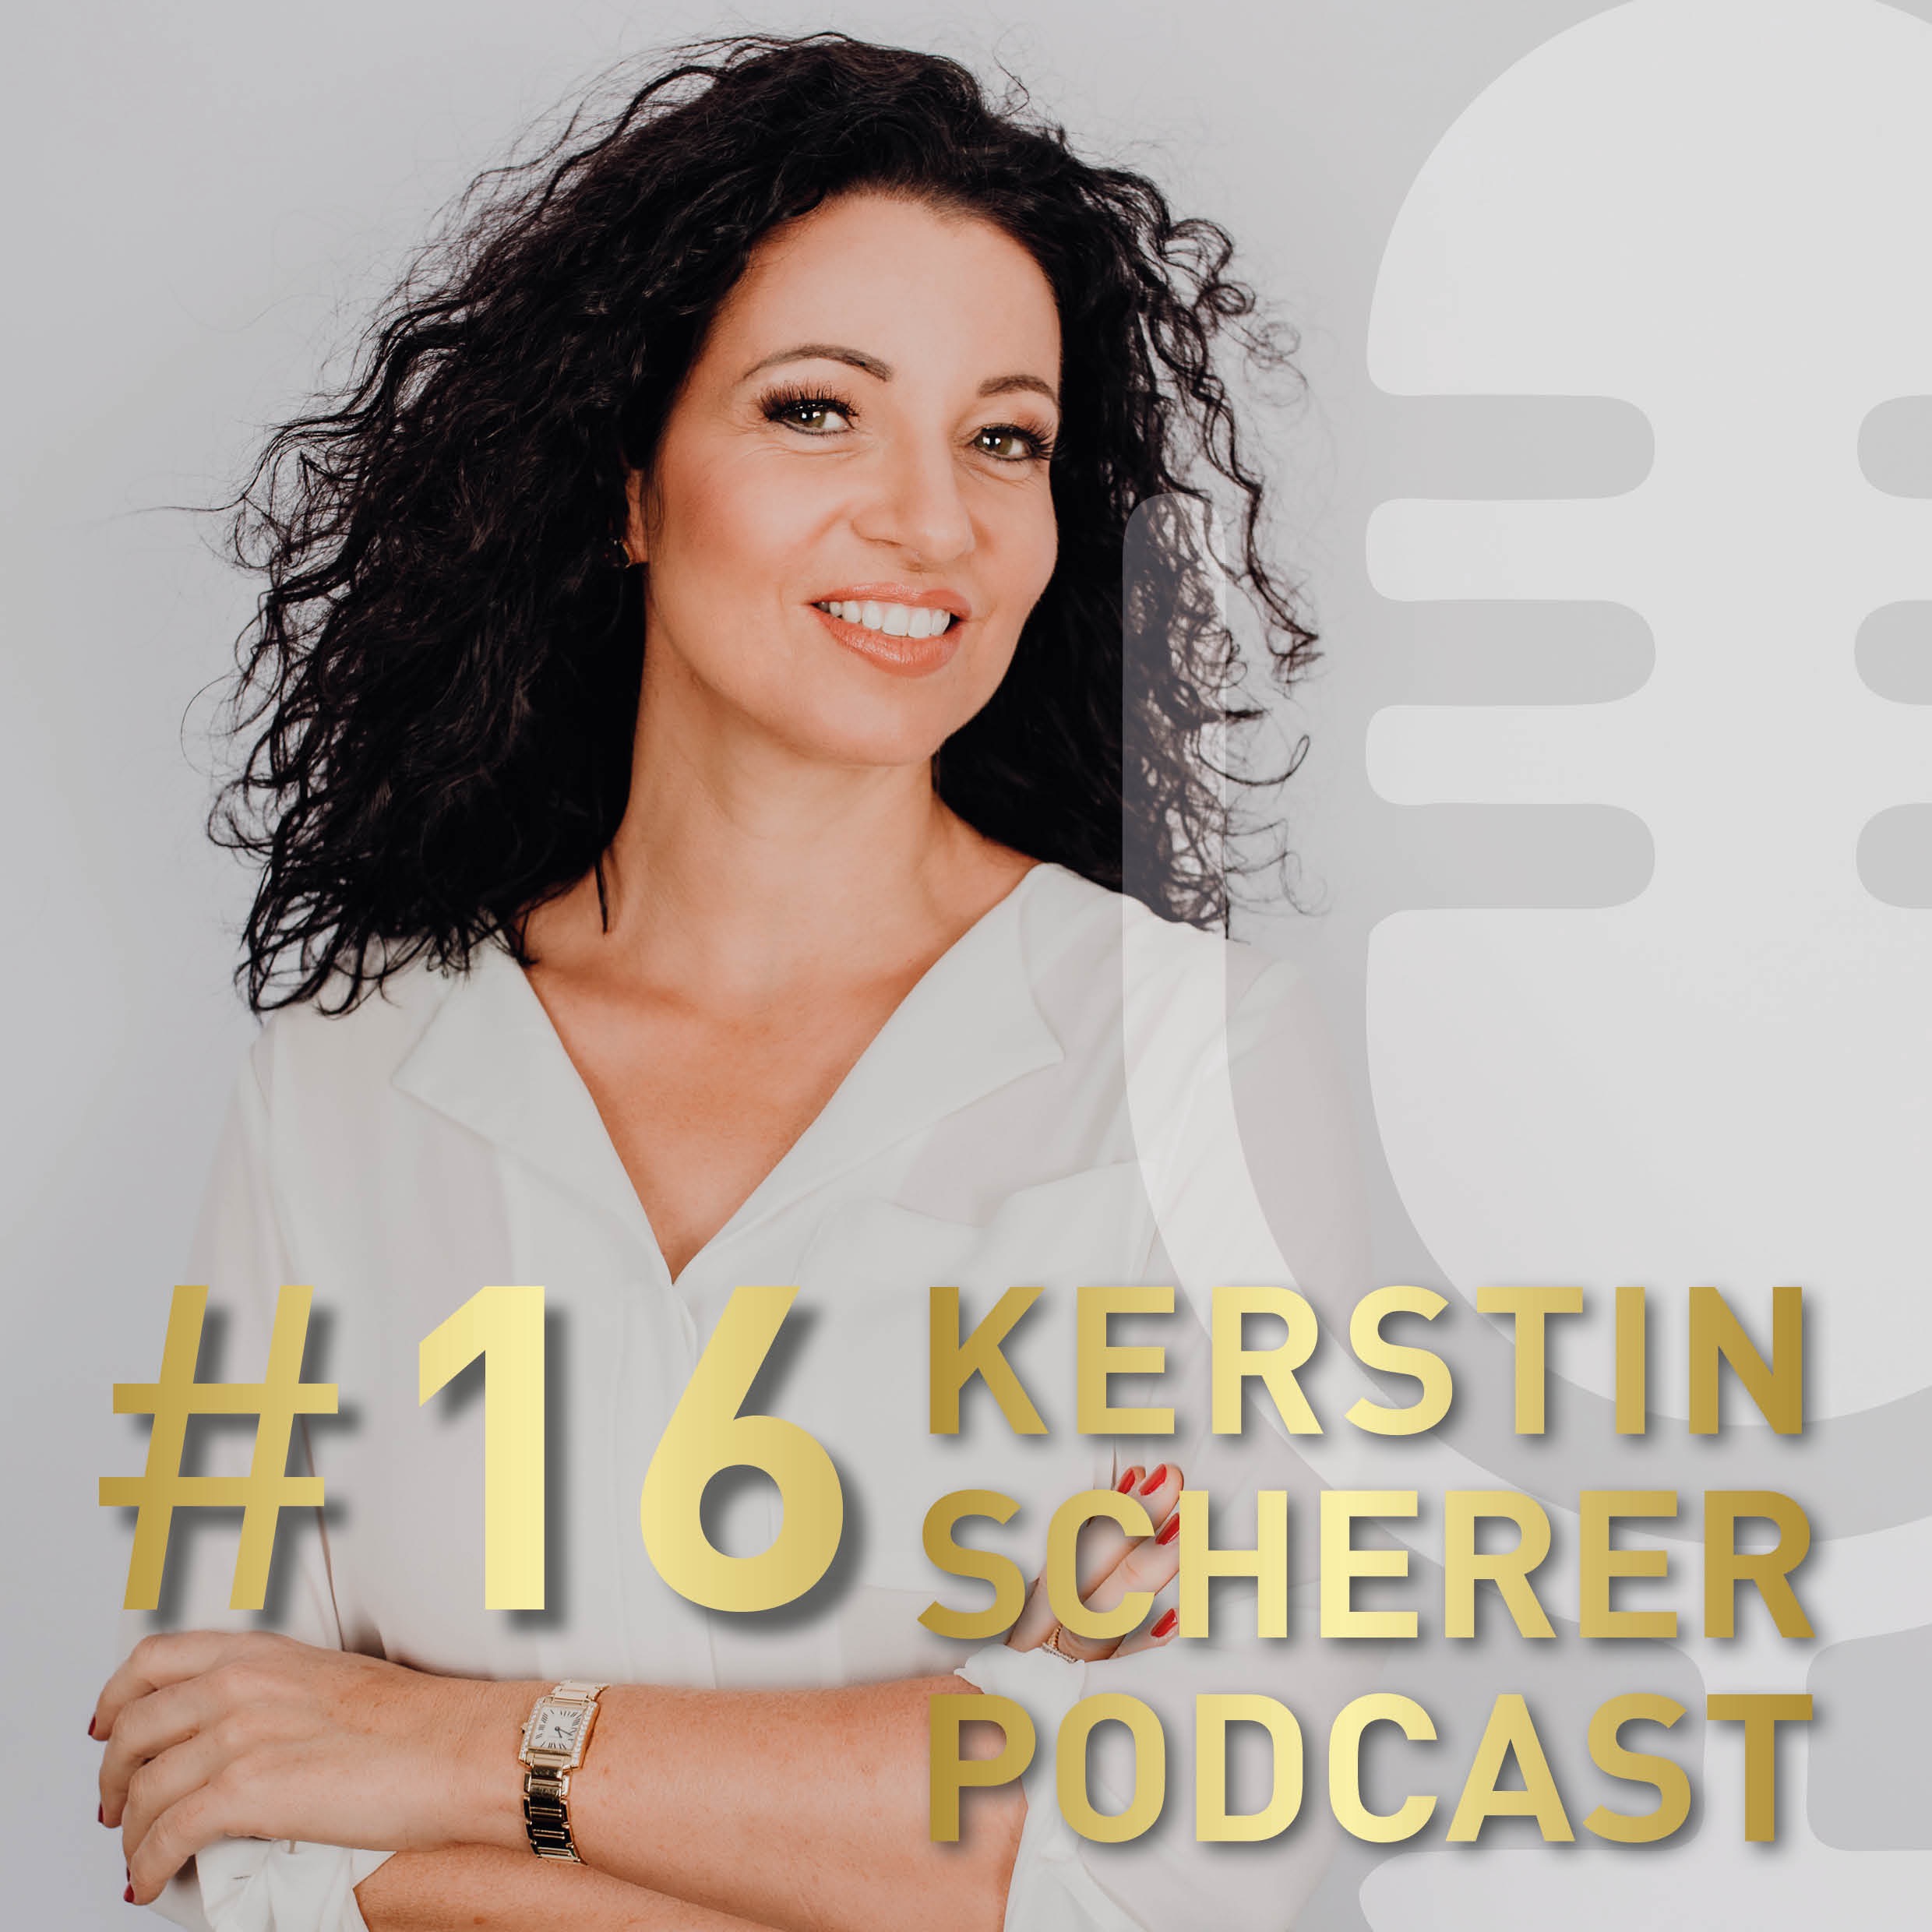 # 16 Gib Dich Ganz - Kerstin Scherer